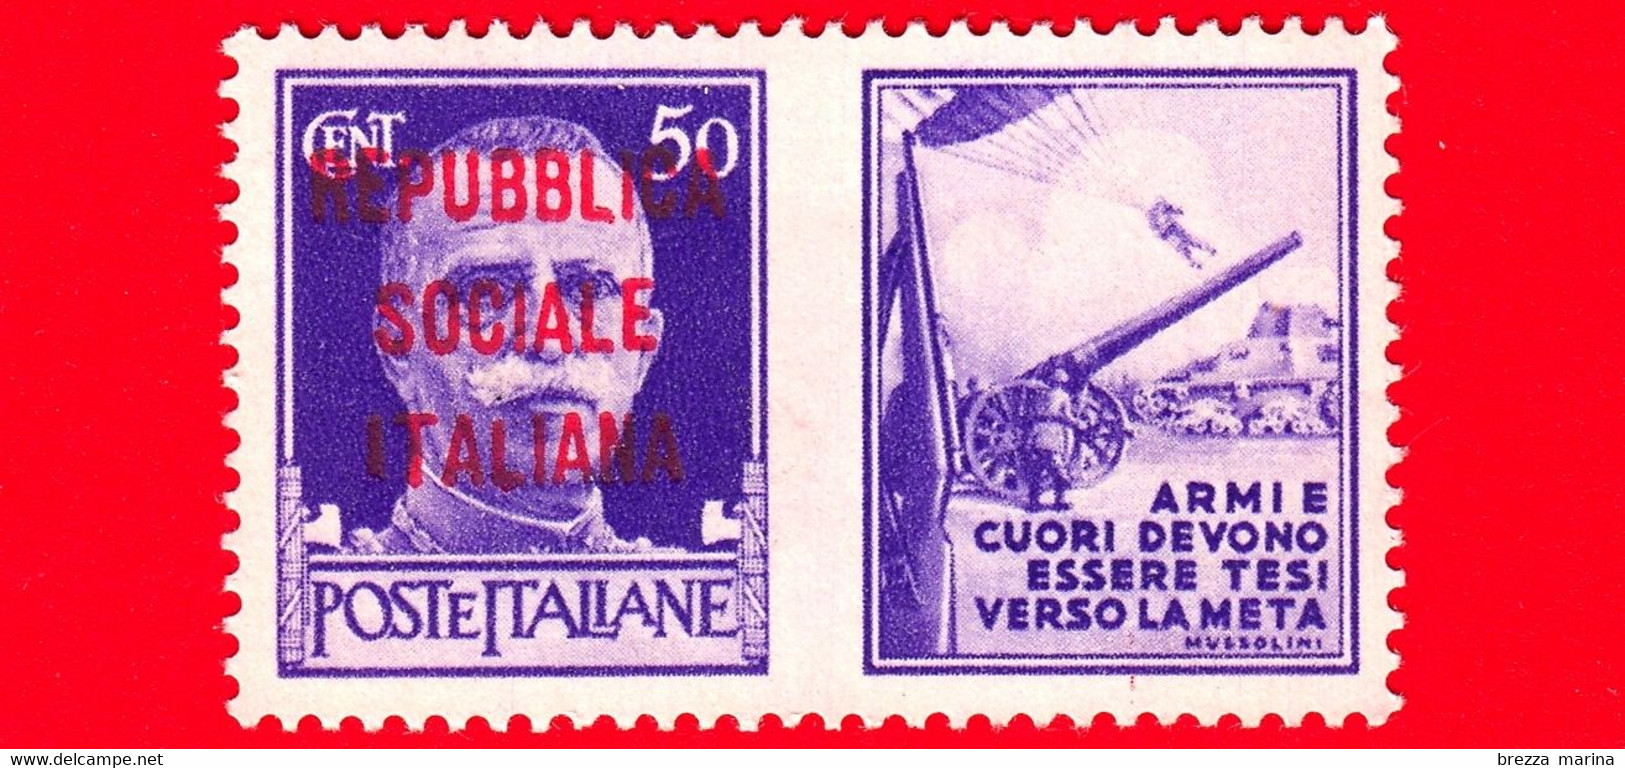 Nuovo - MNH - ITALIA - Rep. Sociale - 1944 - Imperiale - Propaganda Di Guerra - Armi E Cuori Devono Essere Tesi Ver - 50 - Kriegspropaganda